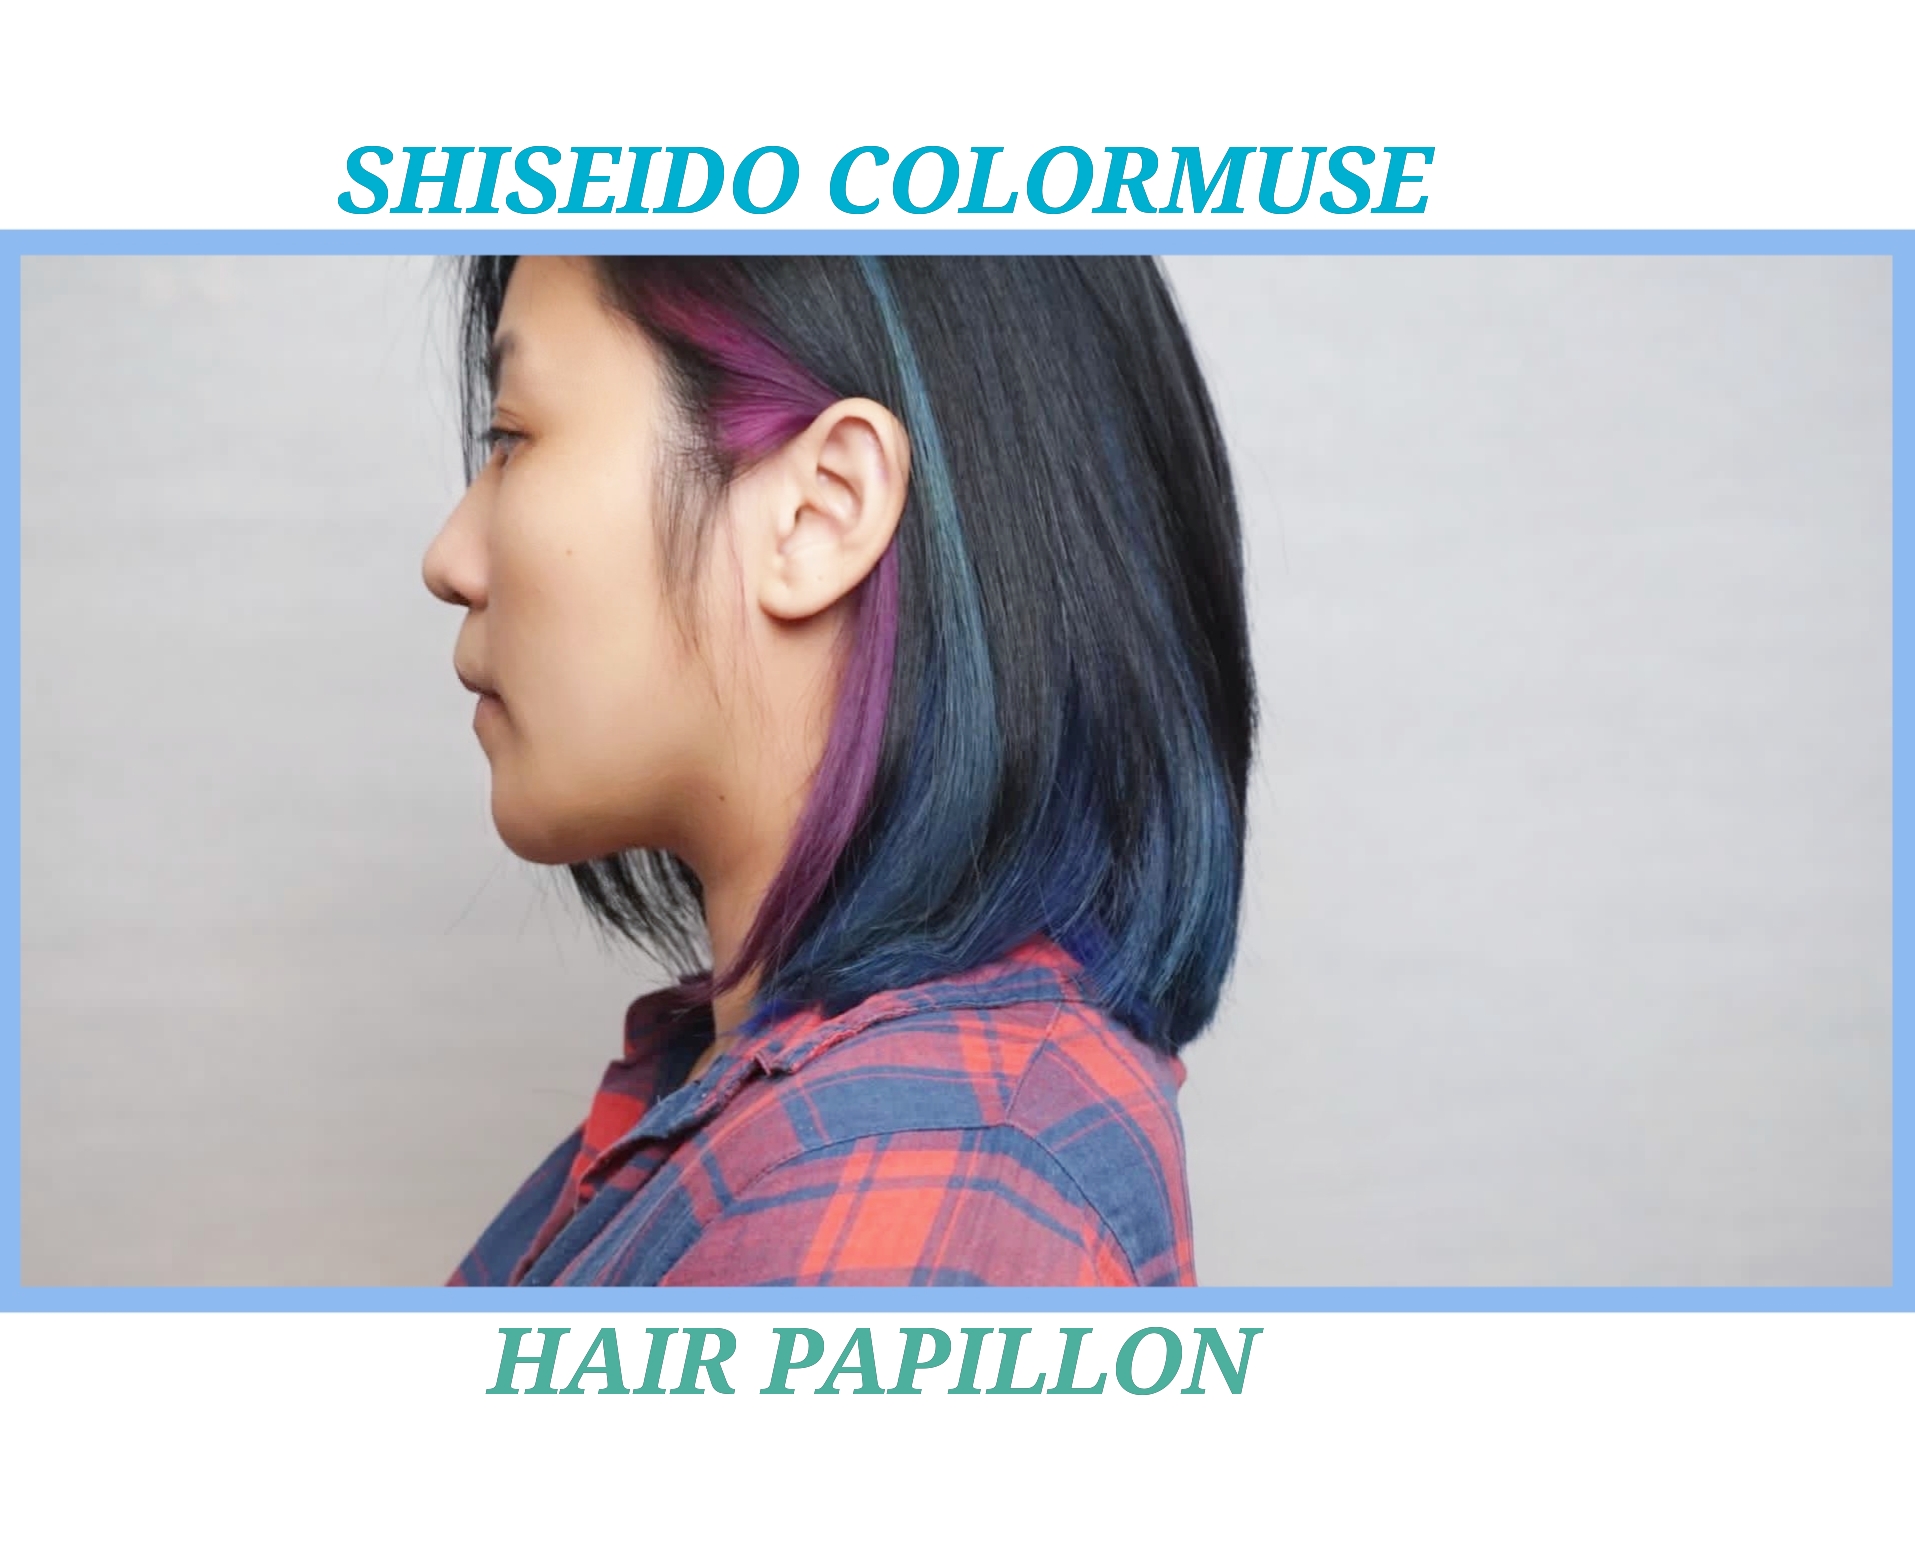 髮型作品参考:shiseido ultist